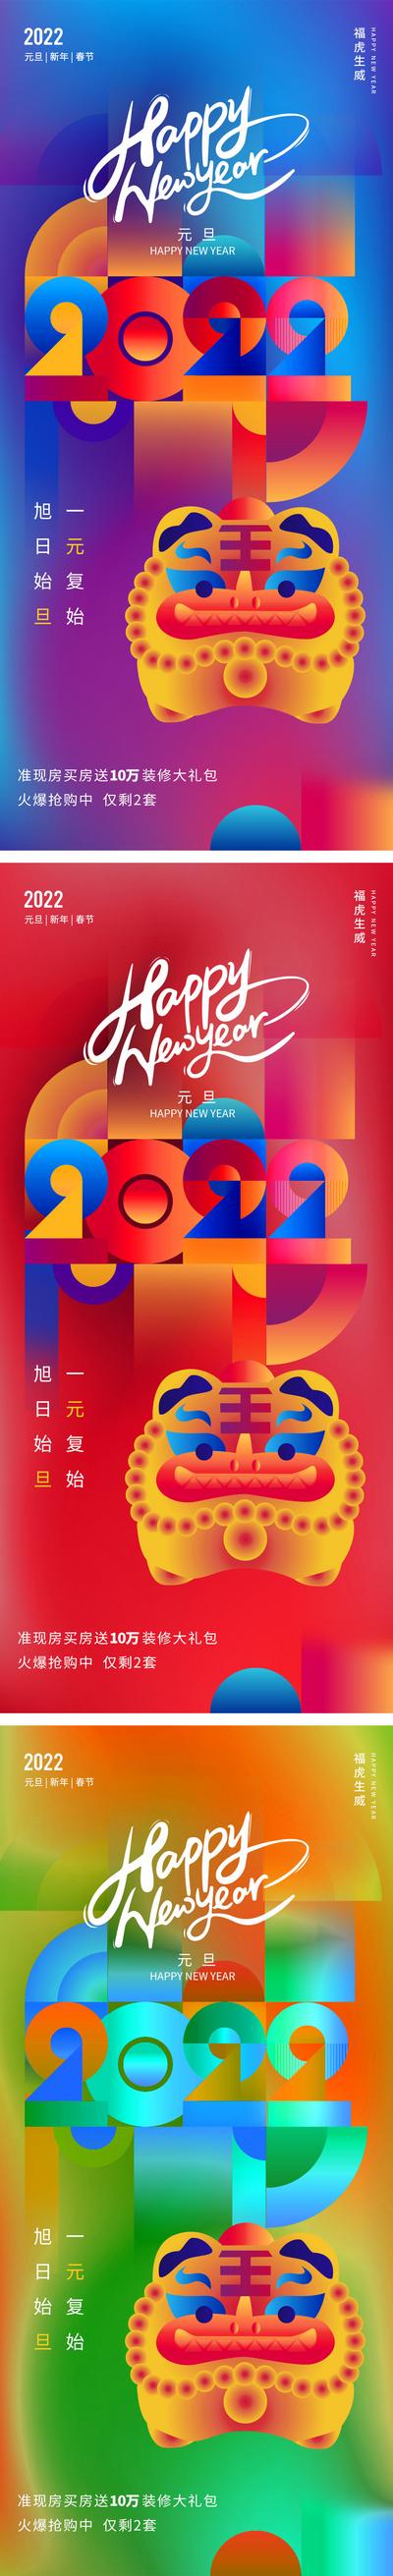 南门网 海报 地产 公历节日 2022 元旦 创意 老虎 炫彩